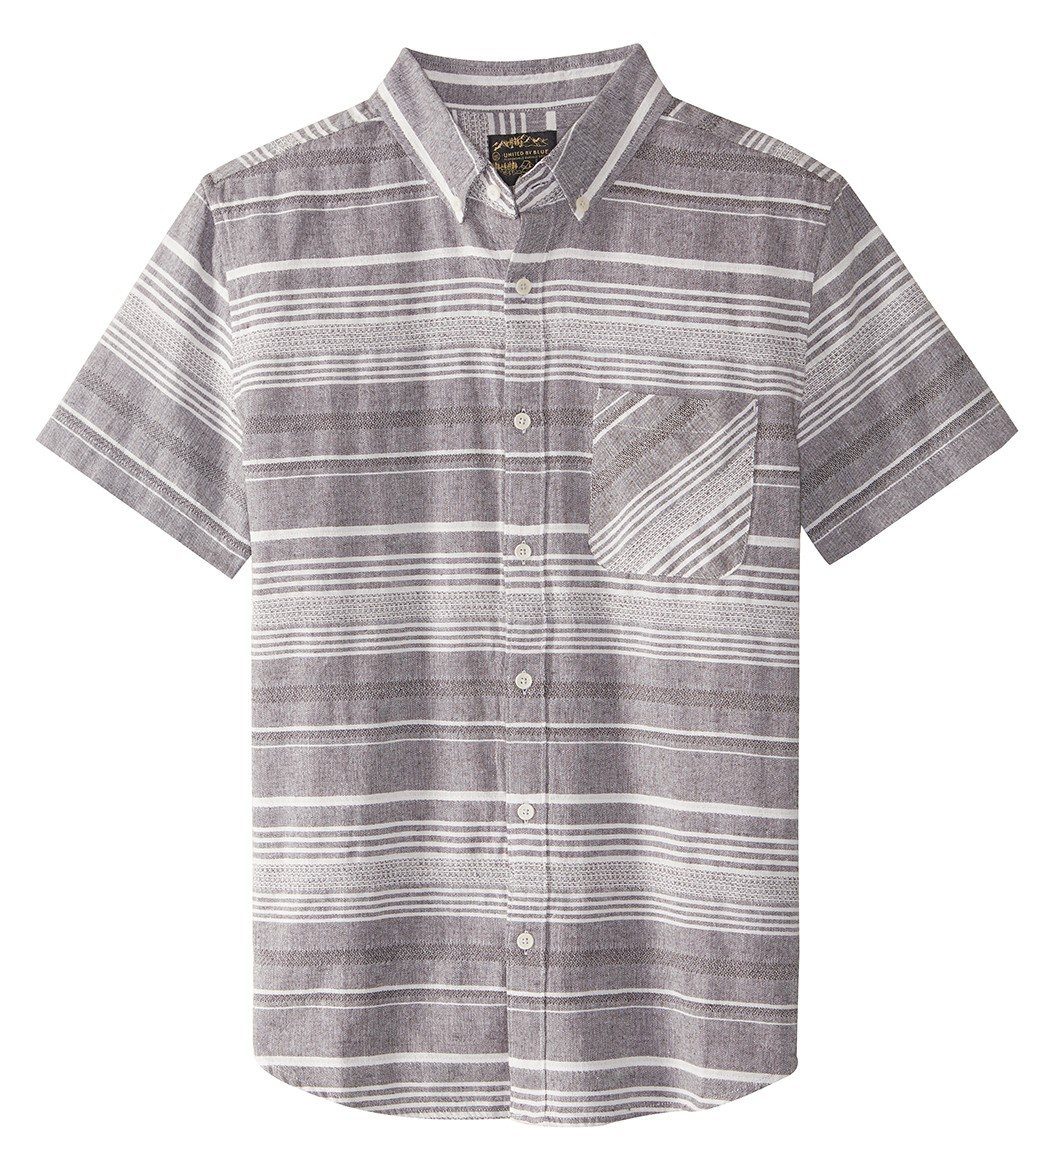 United By Blue Men's Ridgerunner Stripe Short Sleeve Shirt - Grey Small Cotton/Linen - Swimoutlet.com